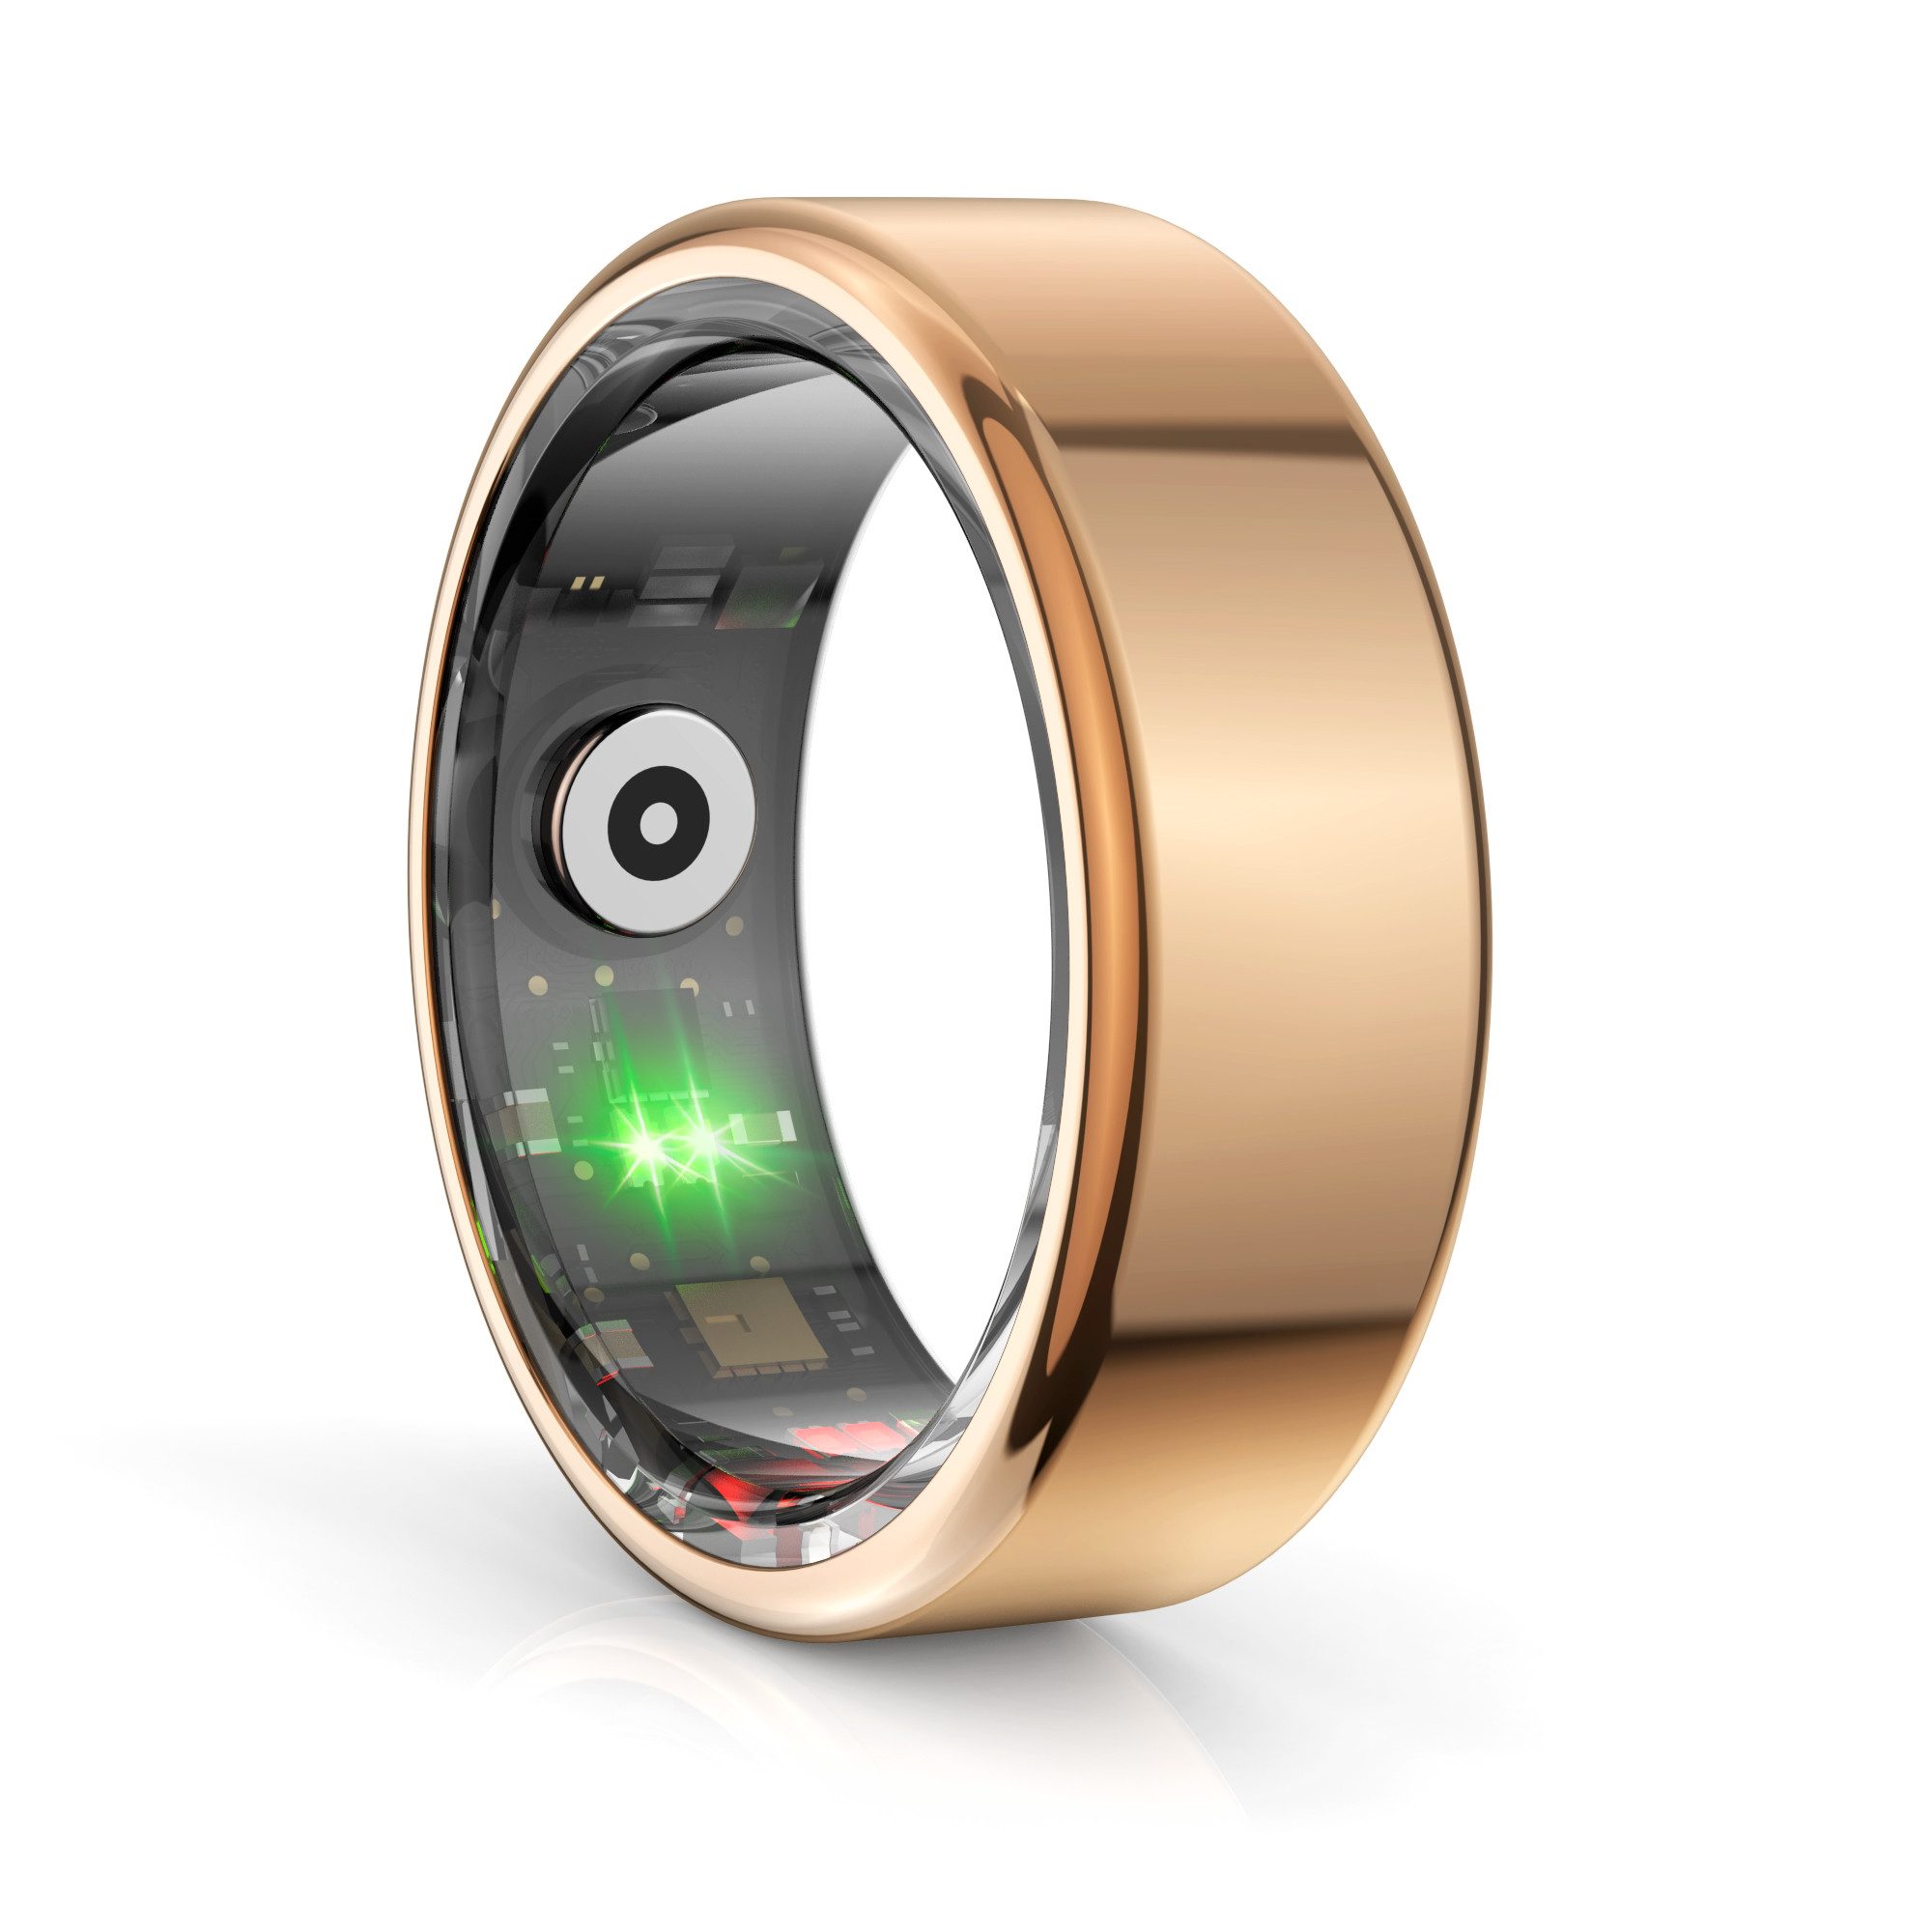 Mutoy Smart Ring Smartringe für Herren und Damen Smartwatch (9# Innendurchmesser 18,9 mm,Umfang 5,95 cm) Smartring zur Überwachung Schlaf und Herzfrequenz,Fitness- und Wellness-Tracker,Schrittzähler-Ring, IP68 wasserdicht, APP für iOS & Android